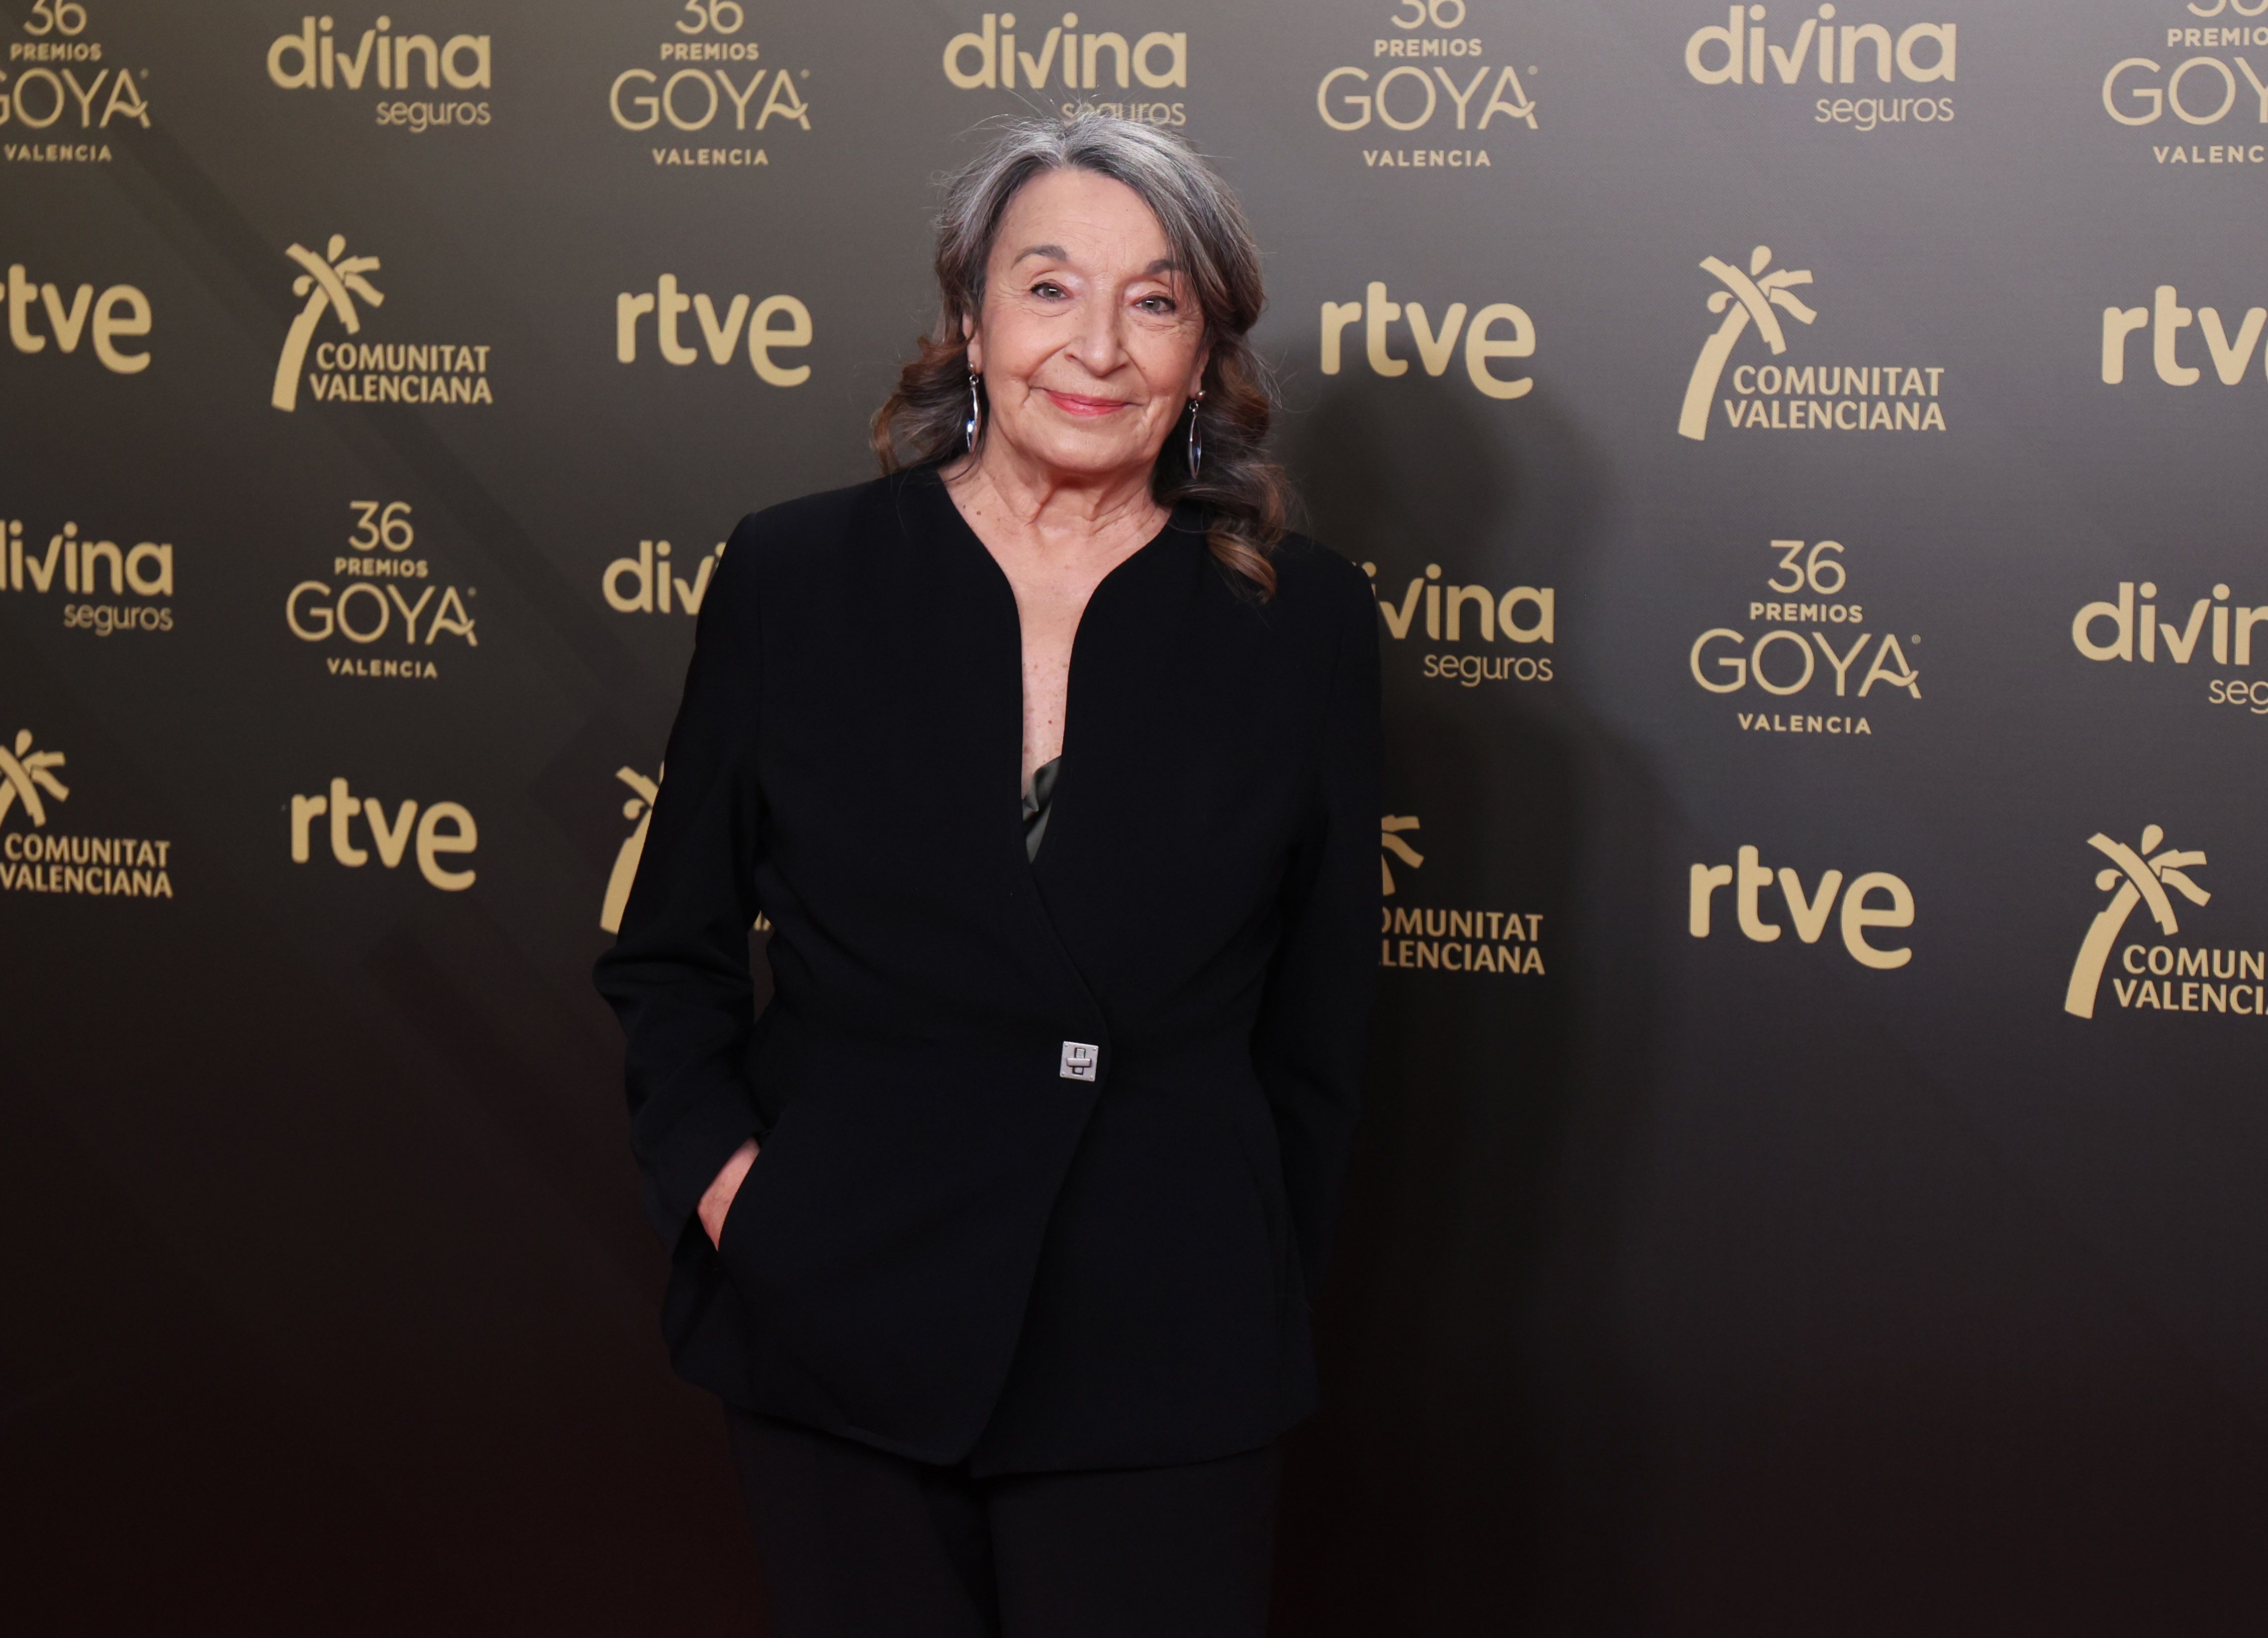 Los actores denuncian: "Hay pocas nominaciones para intérpretes mayores de 65 años en los Goya"